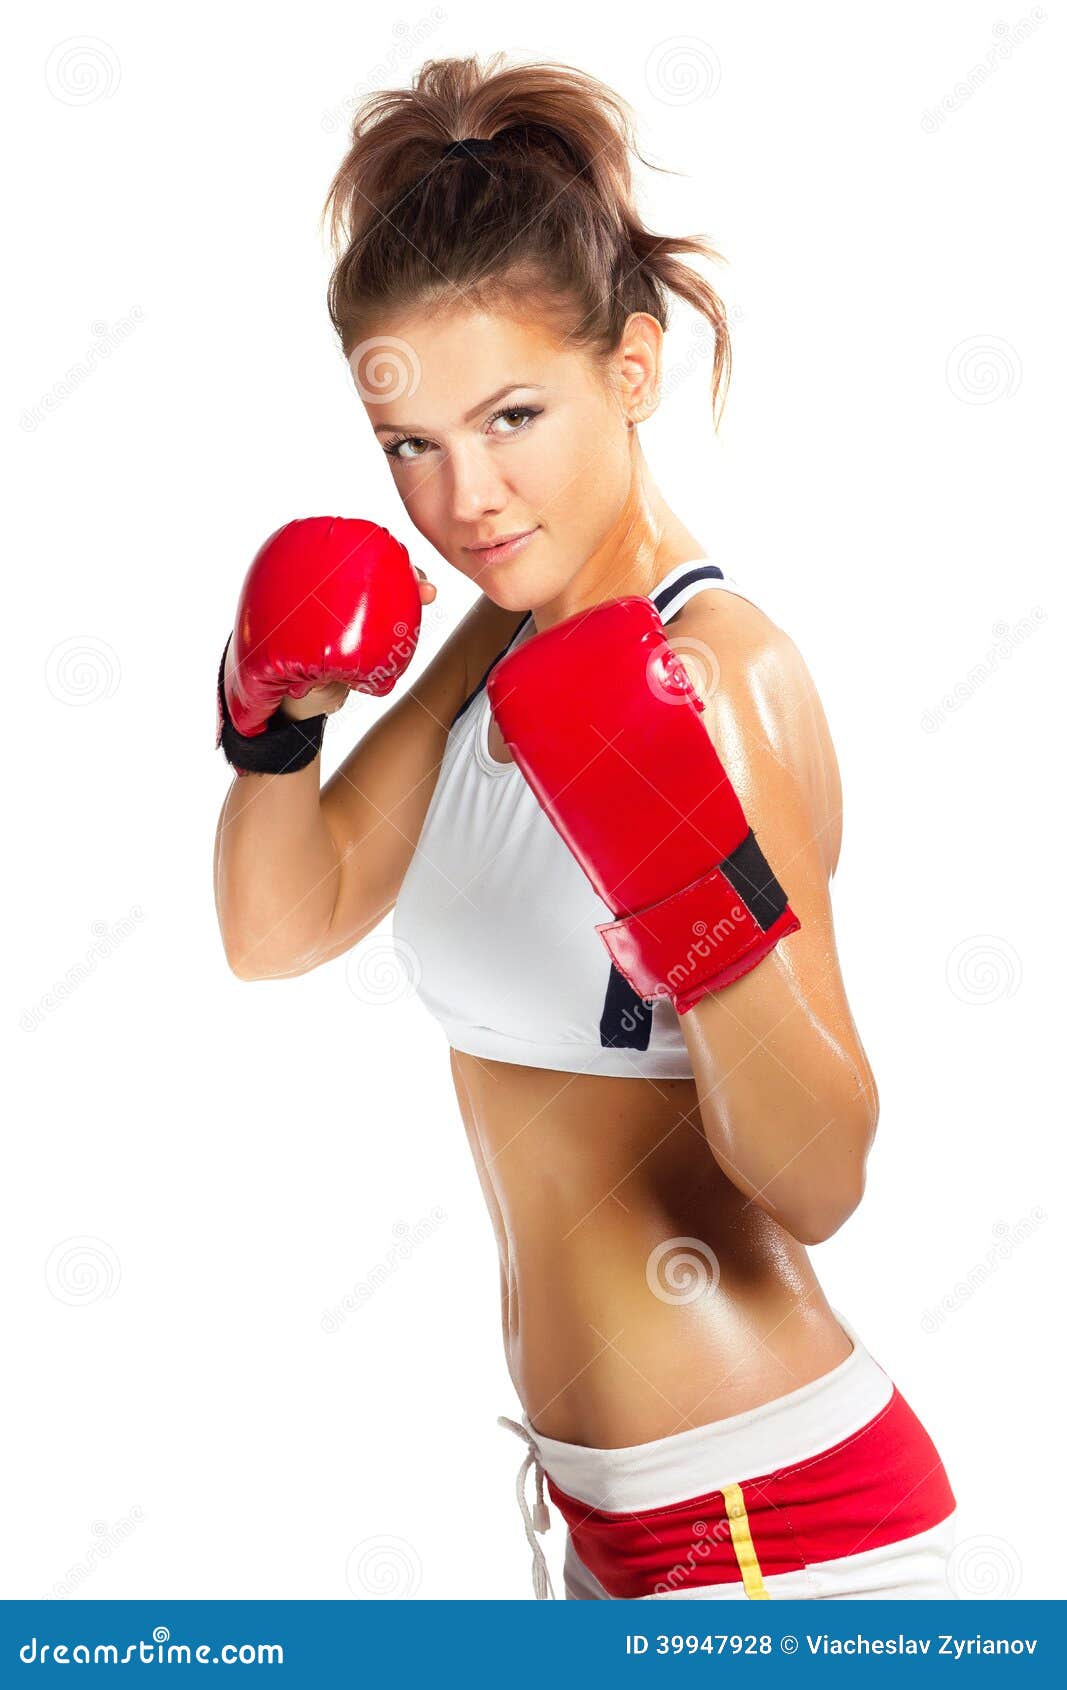 Una Mujer Boxeadora Con Un Chándal Rojo Golpea Un Saco De Boxeo. Fotos,  retratos, imágenes y fotografía de archivo libres de derecho. Image  200247997